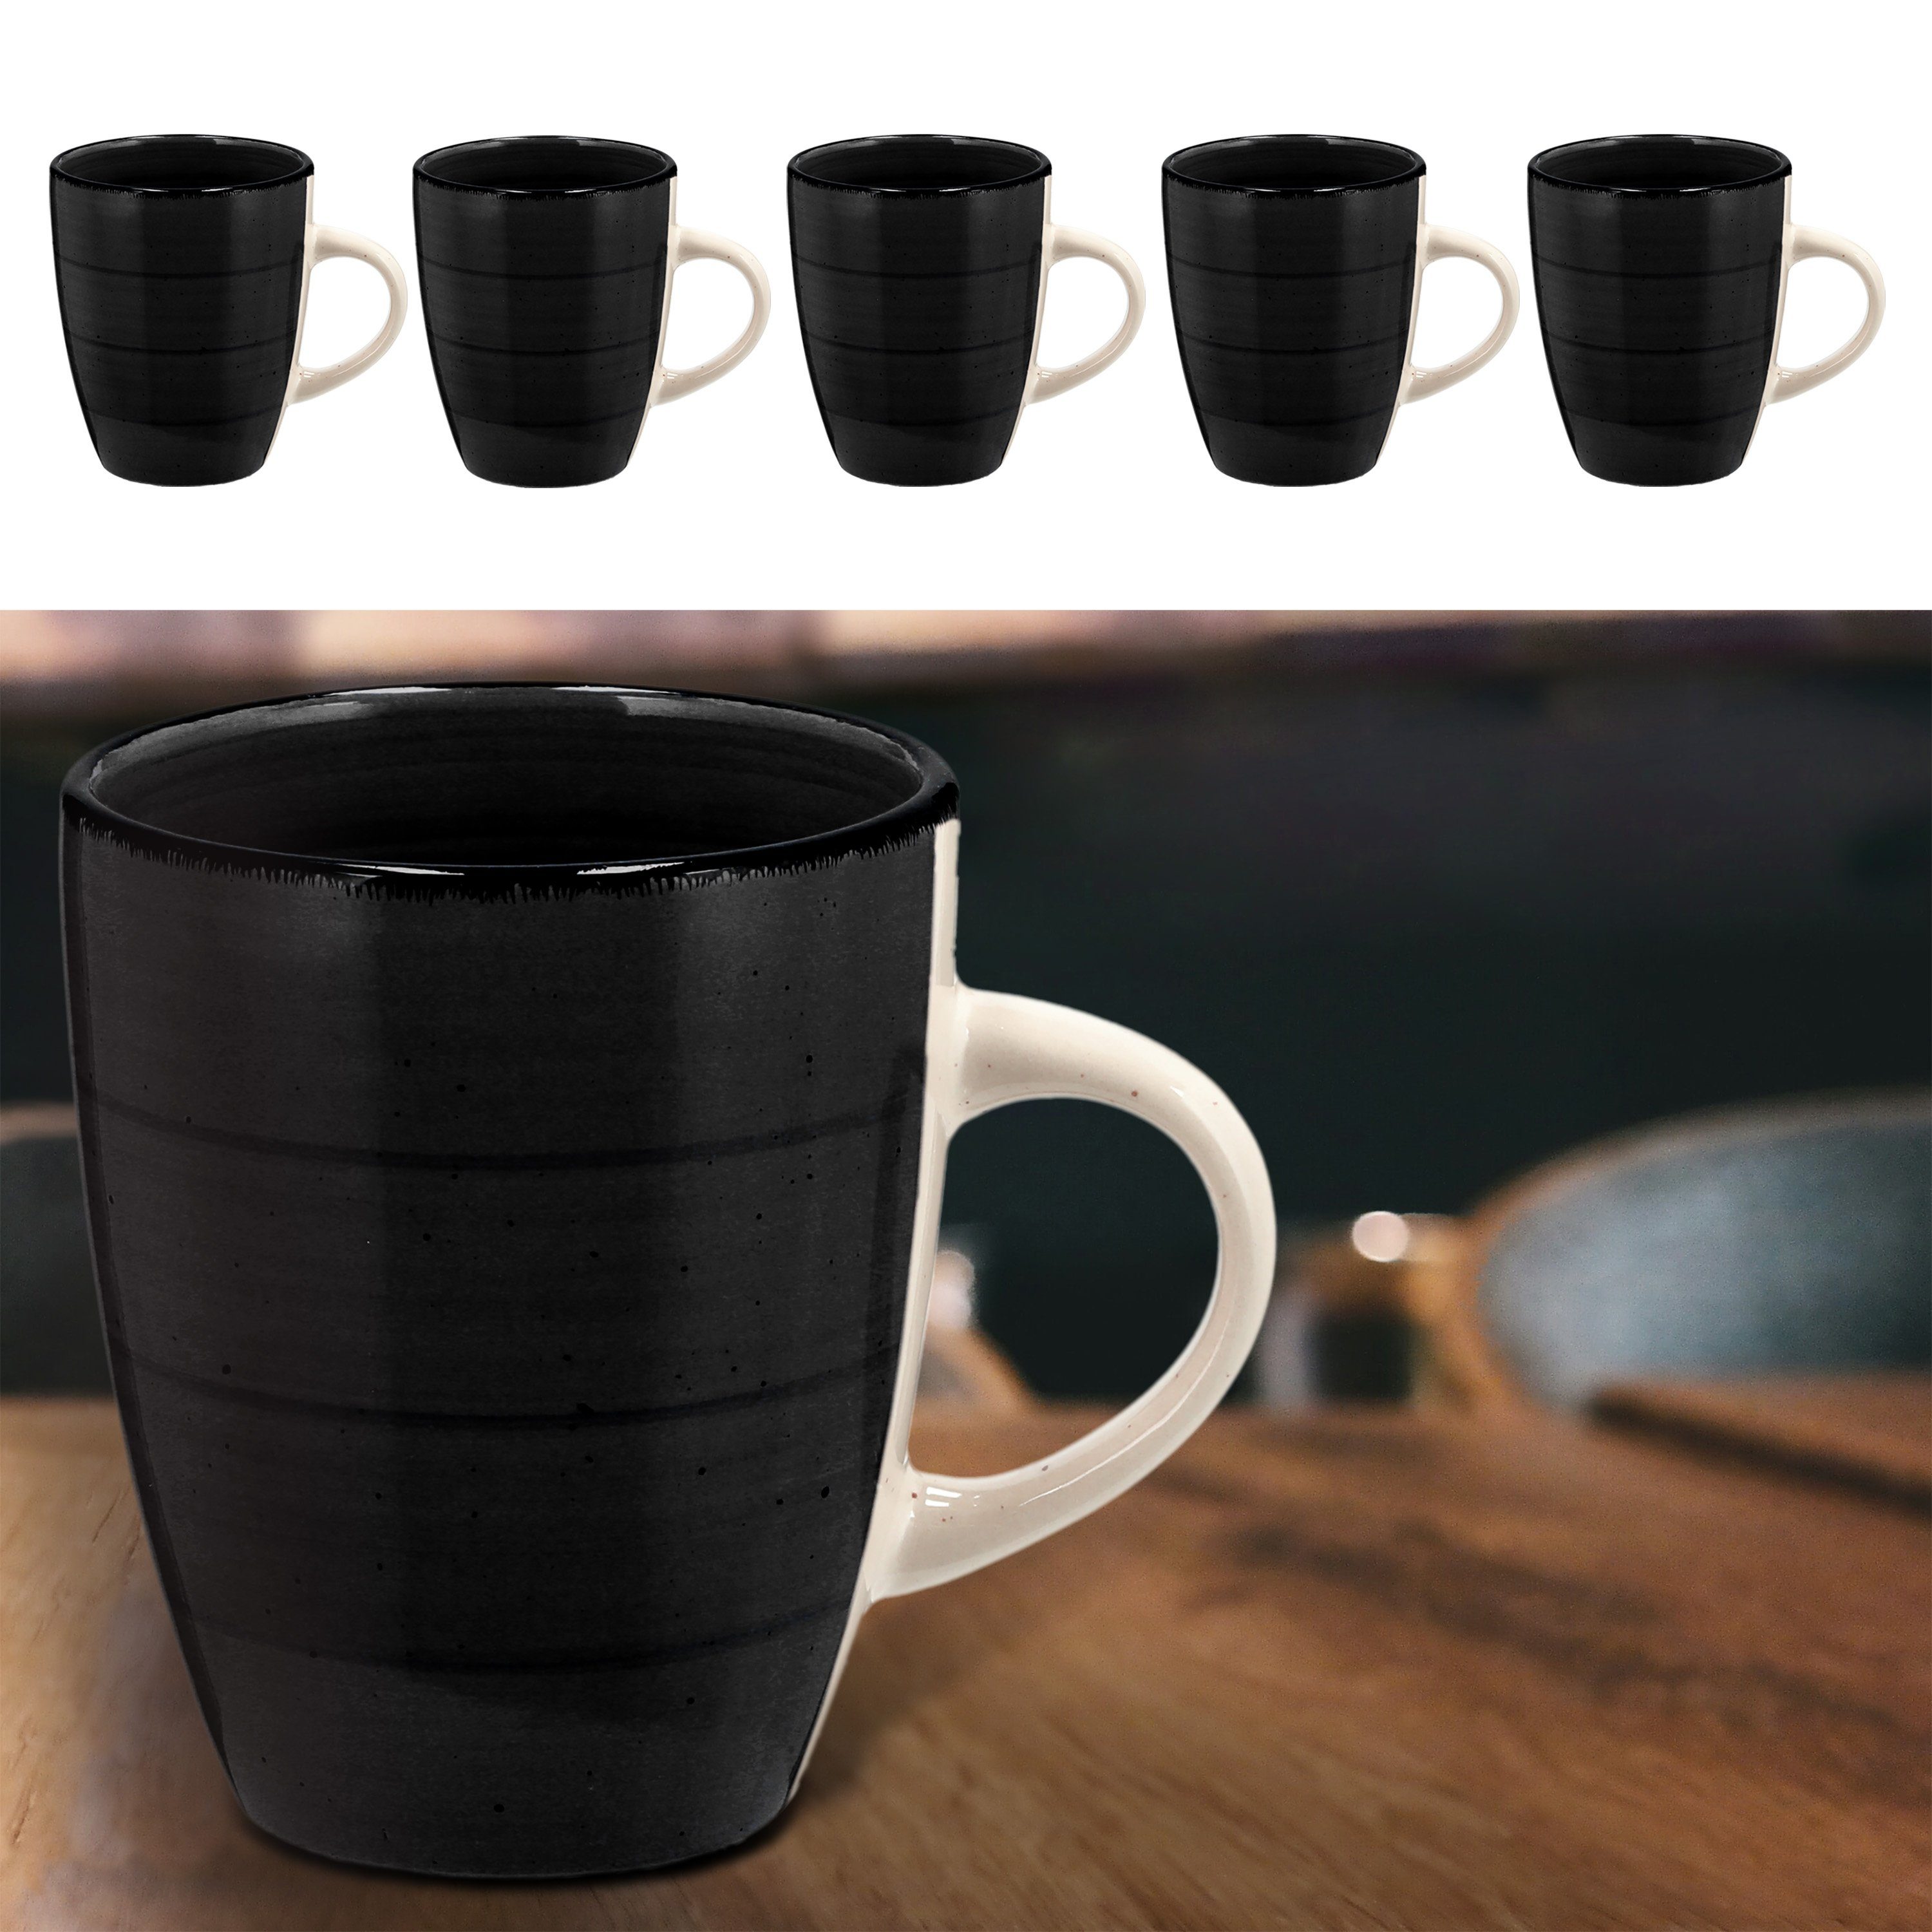 CEPEWA Tasse Kaffeebecher Steingut schwarz 360ml Set Becher 9x11cm 6er Tasse